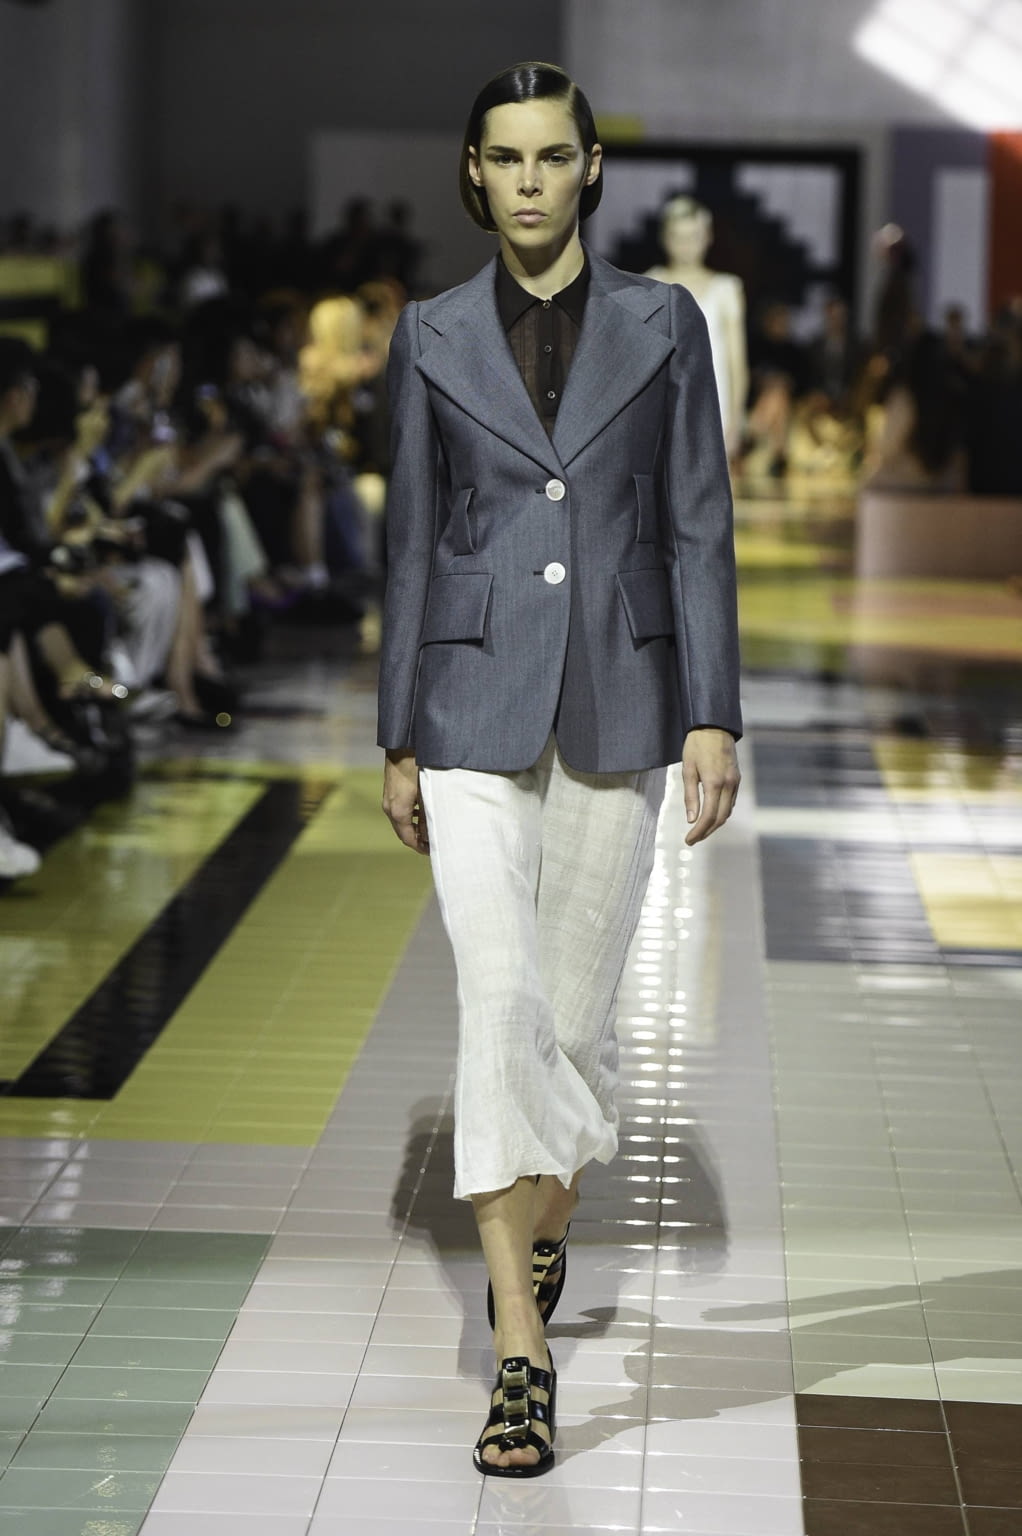 Prada SS20 womenswear #4 - Tagwalk: the fashion search engine